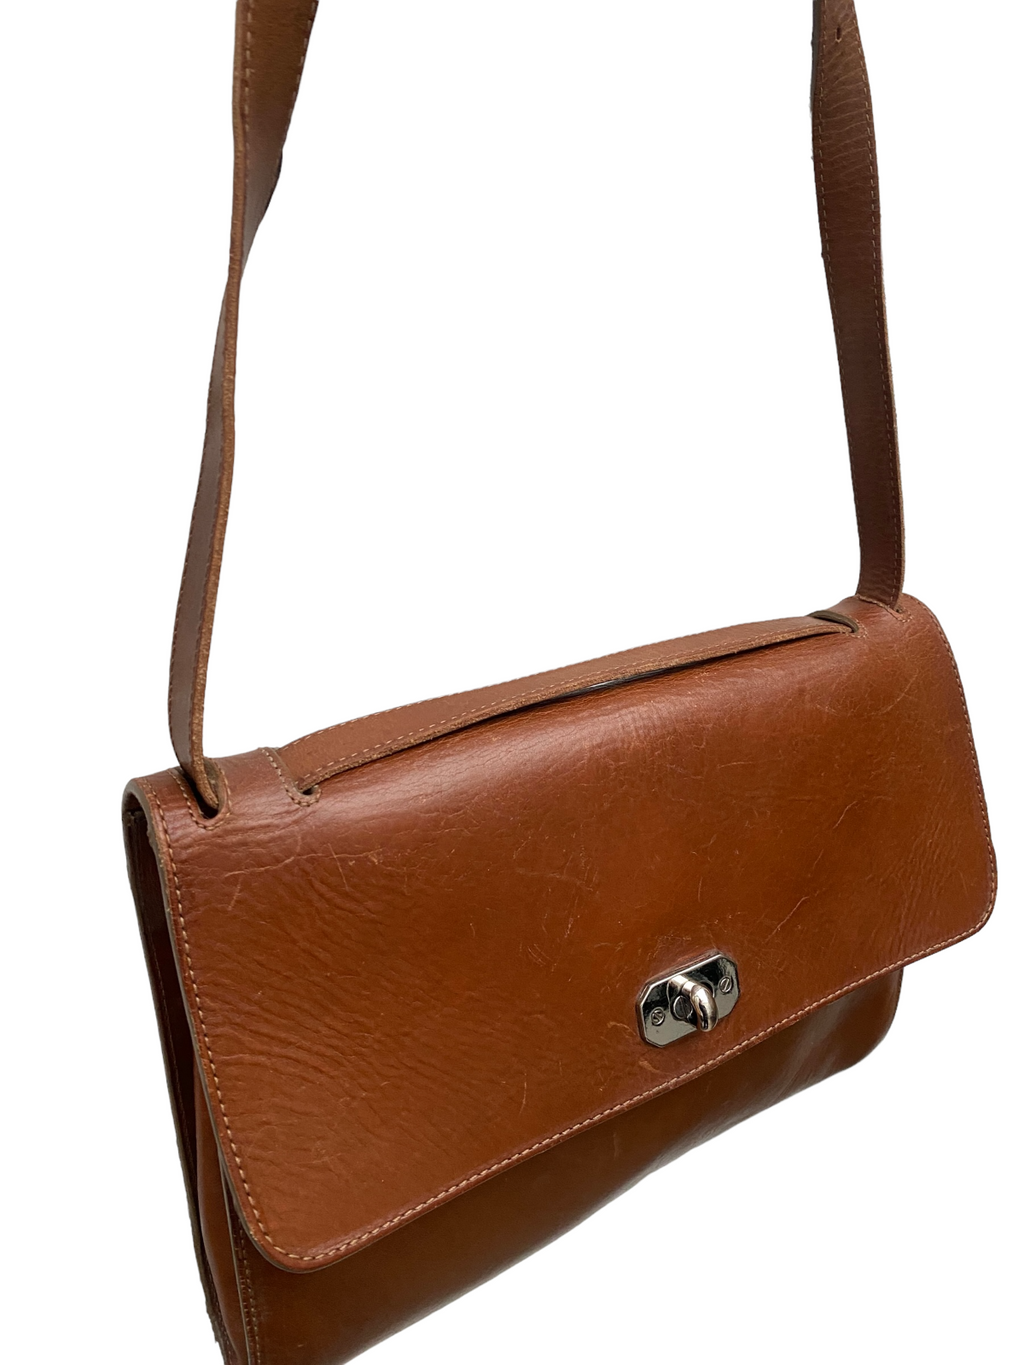 Superb Square Brown leather handbag bag